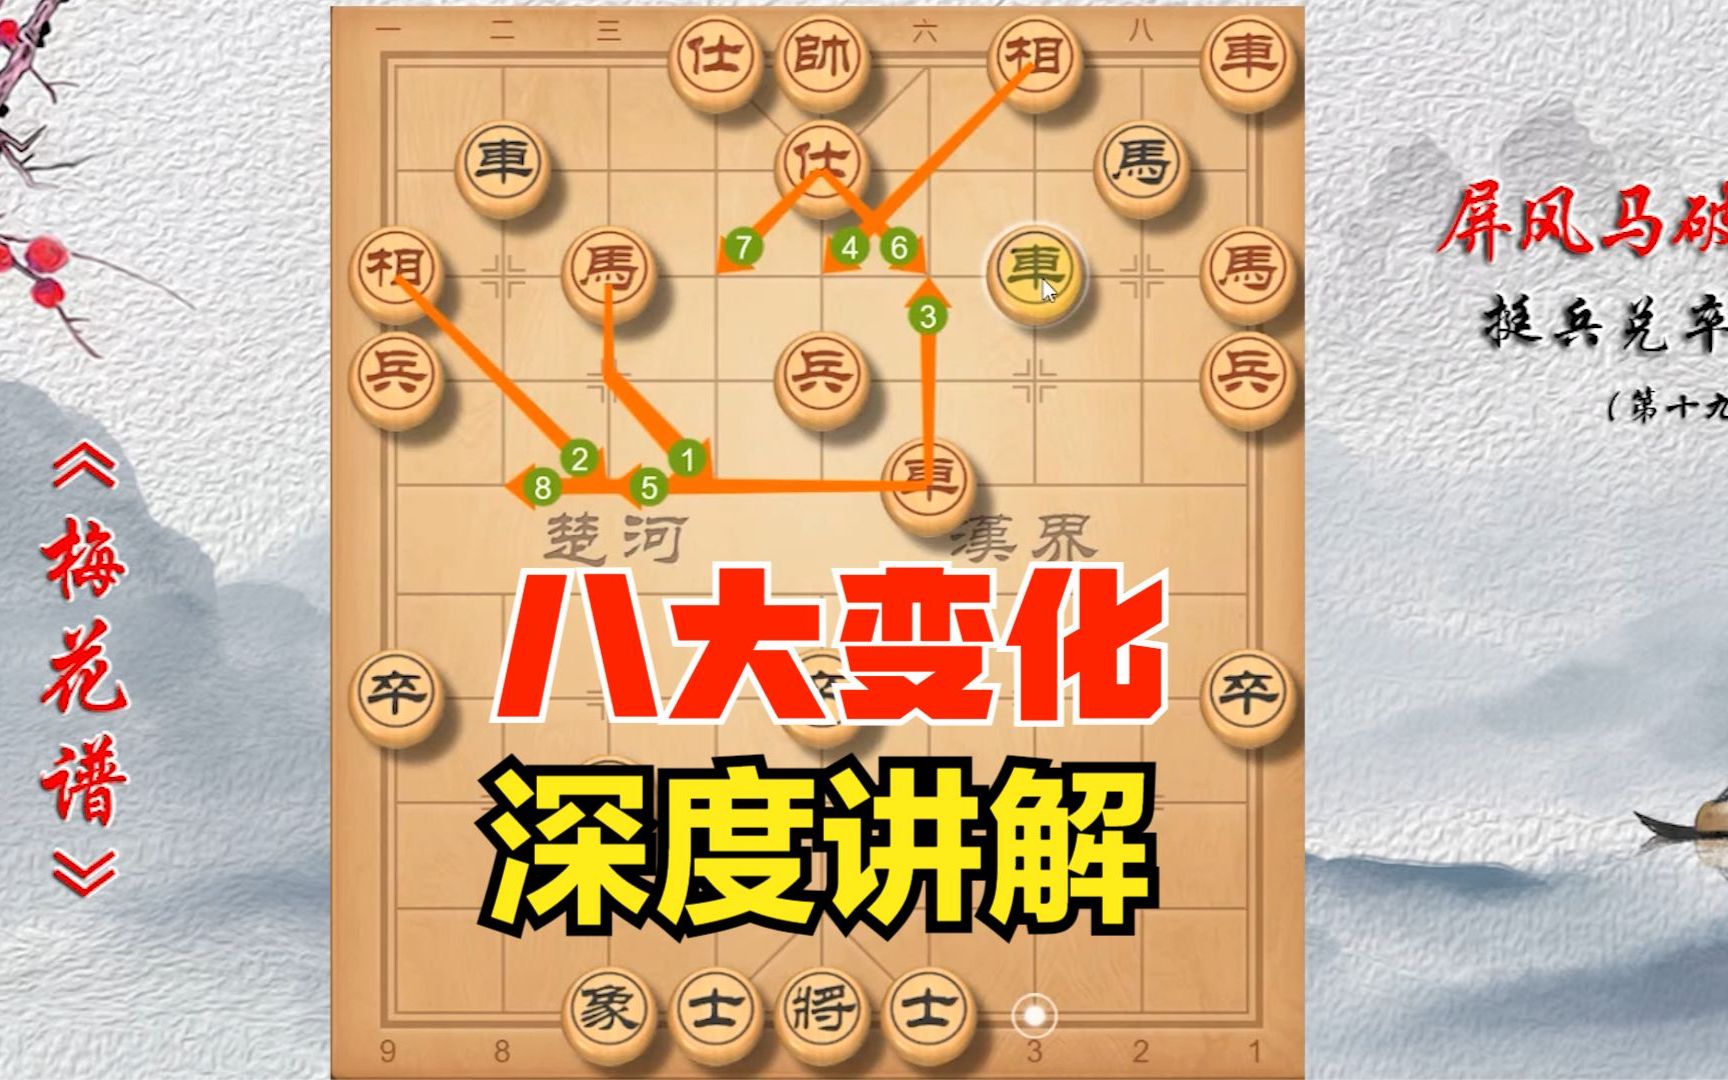 【象棋宝典】中国象棋《梅花谱》古谱深度讲解,看完棋力至少提升两倍